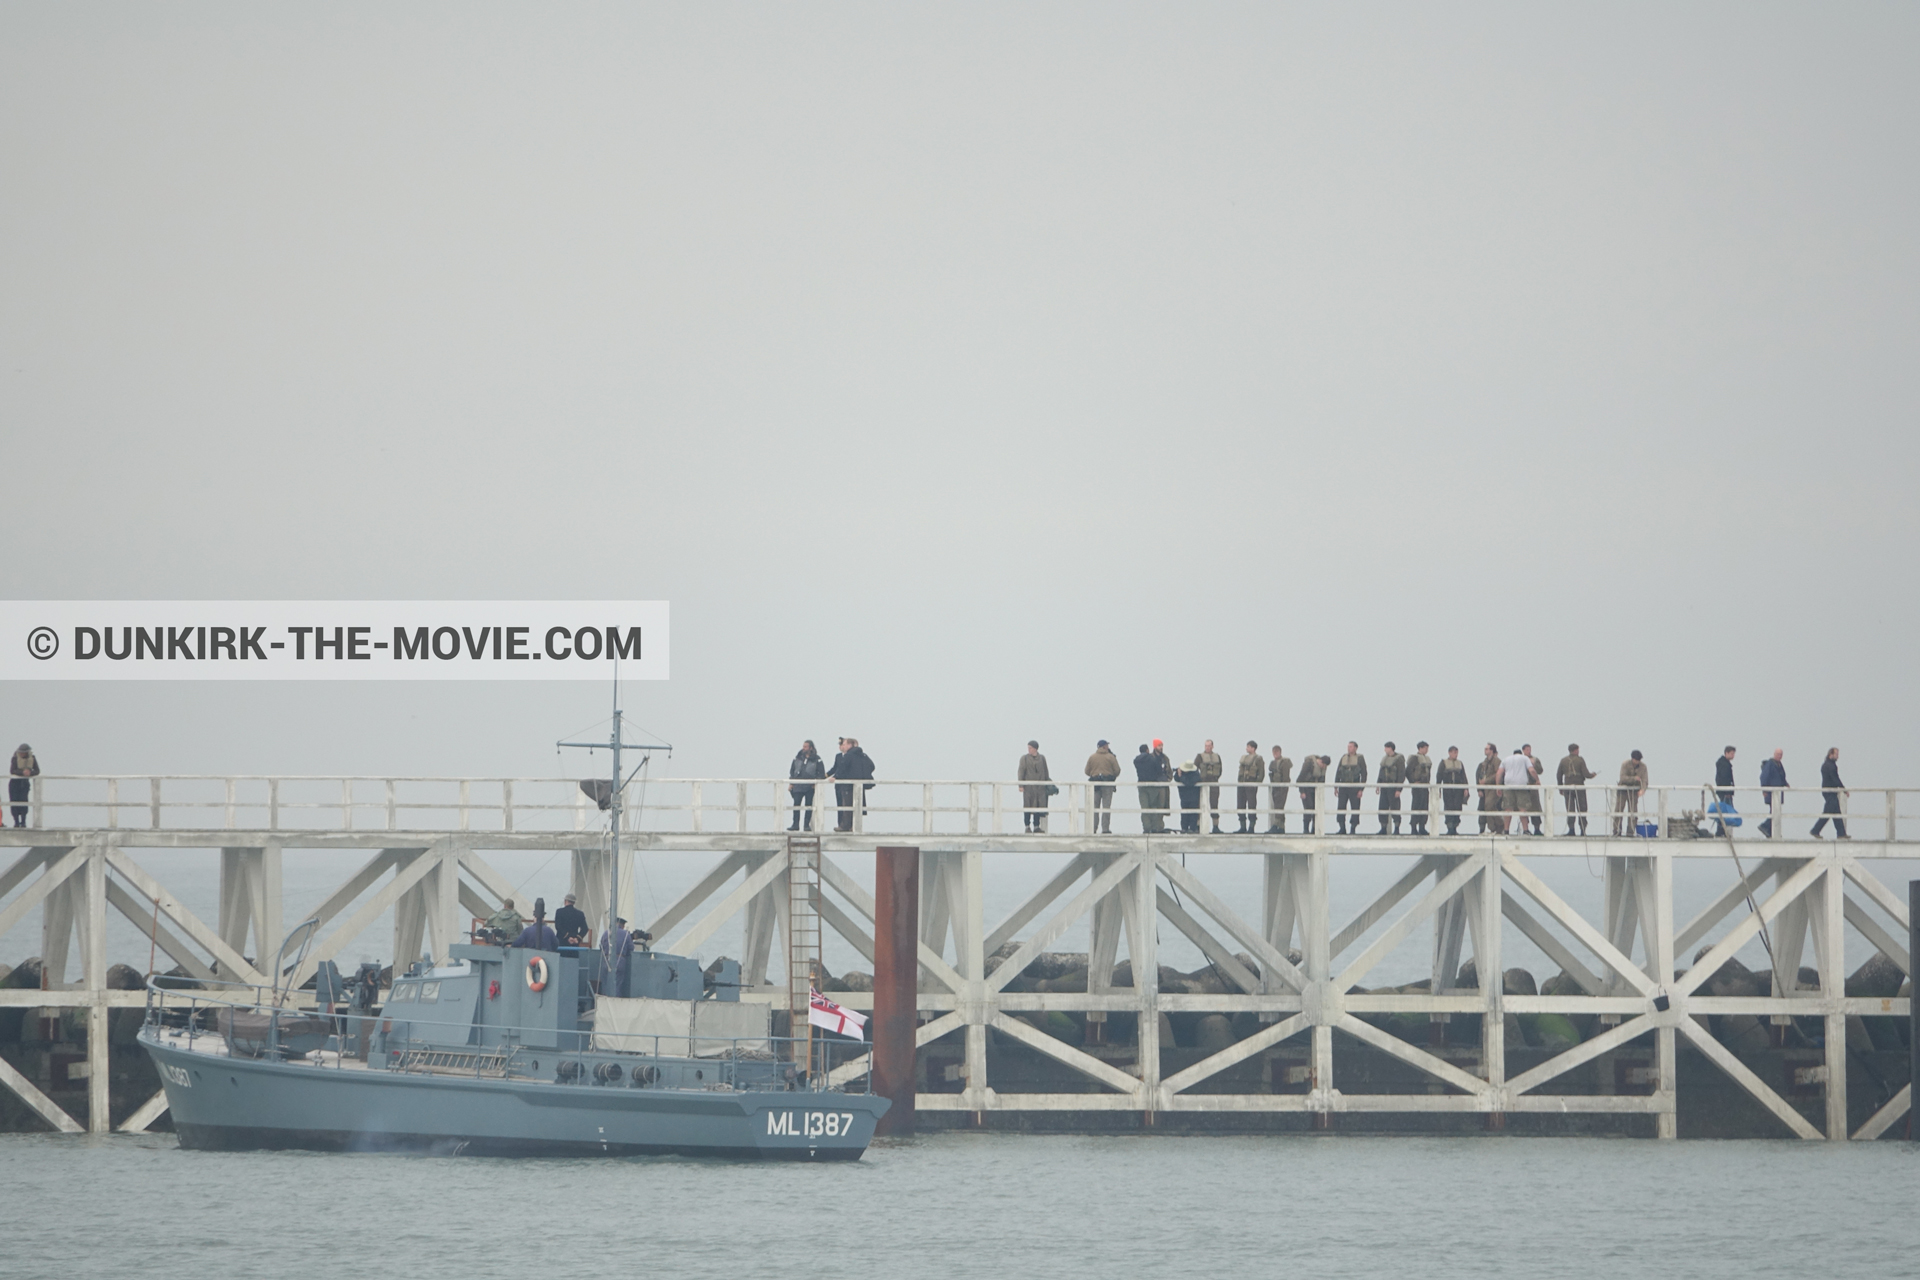 Fotos con cielo gris, extras, HMS Medusa - ML1387, muelle del ESTE, mares calma, equipo técnica,  durante el rodaje de la película Dunkerque de Nolan